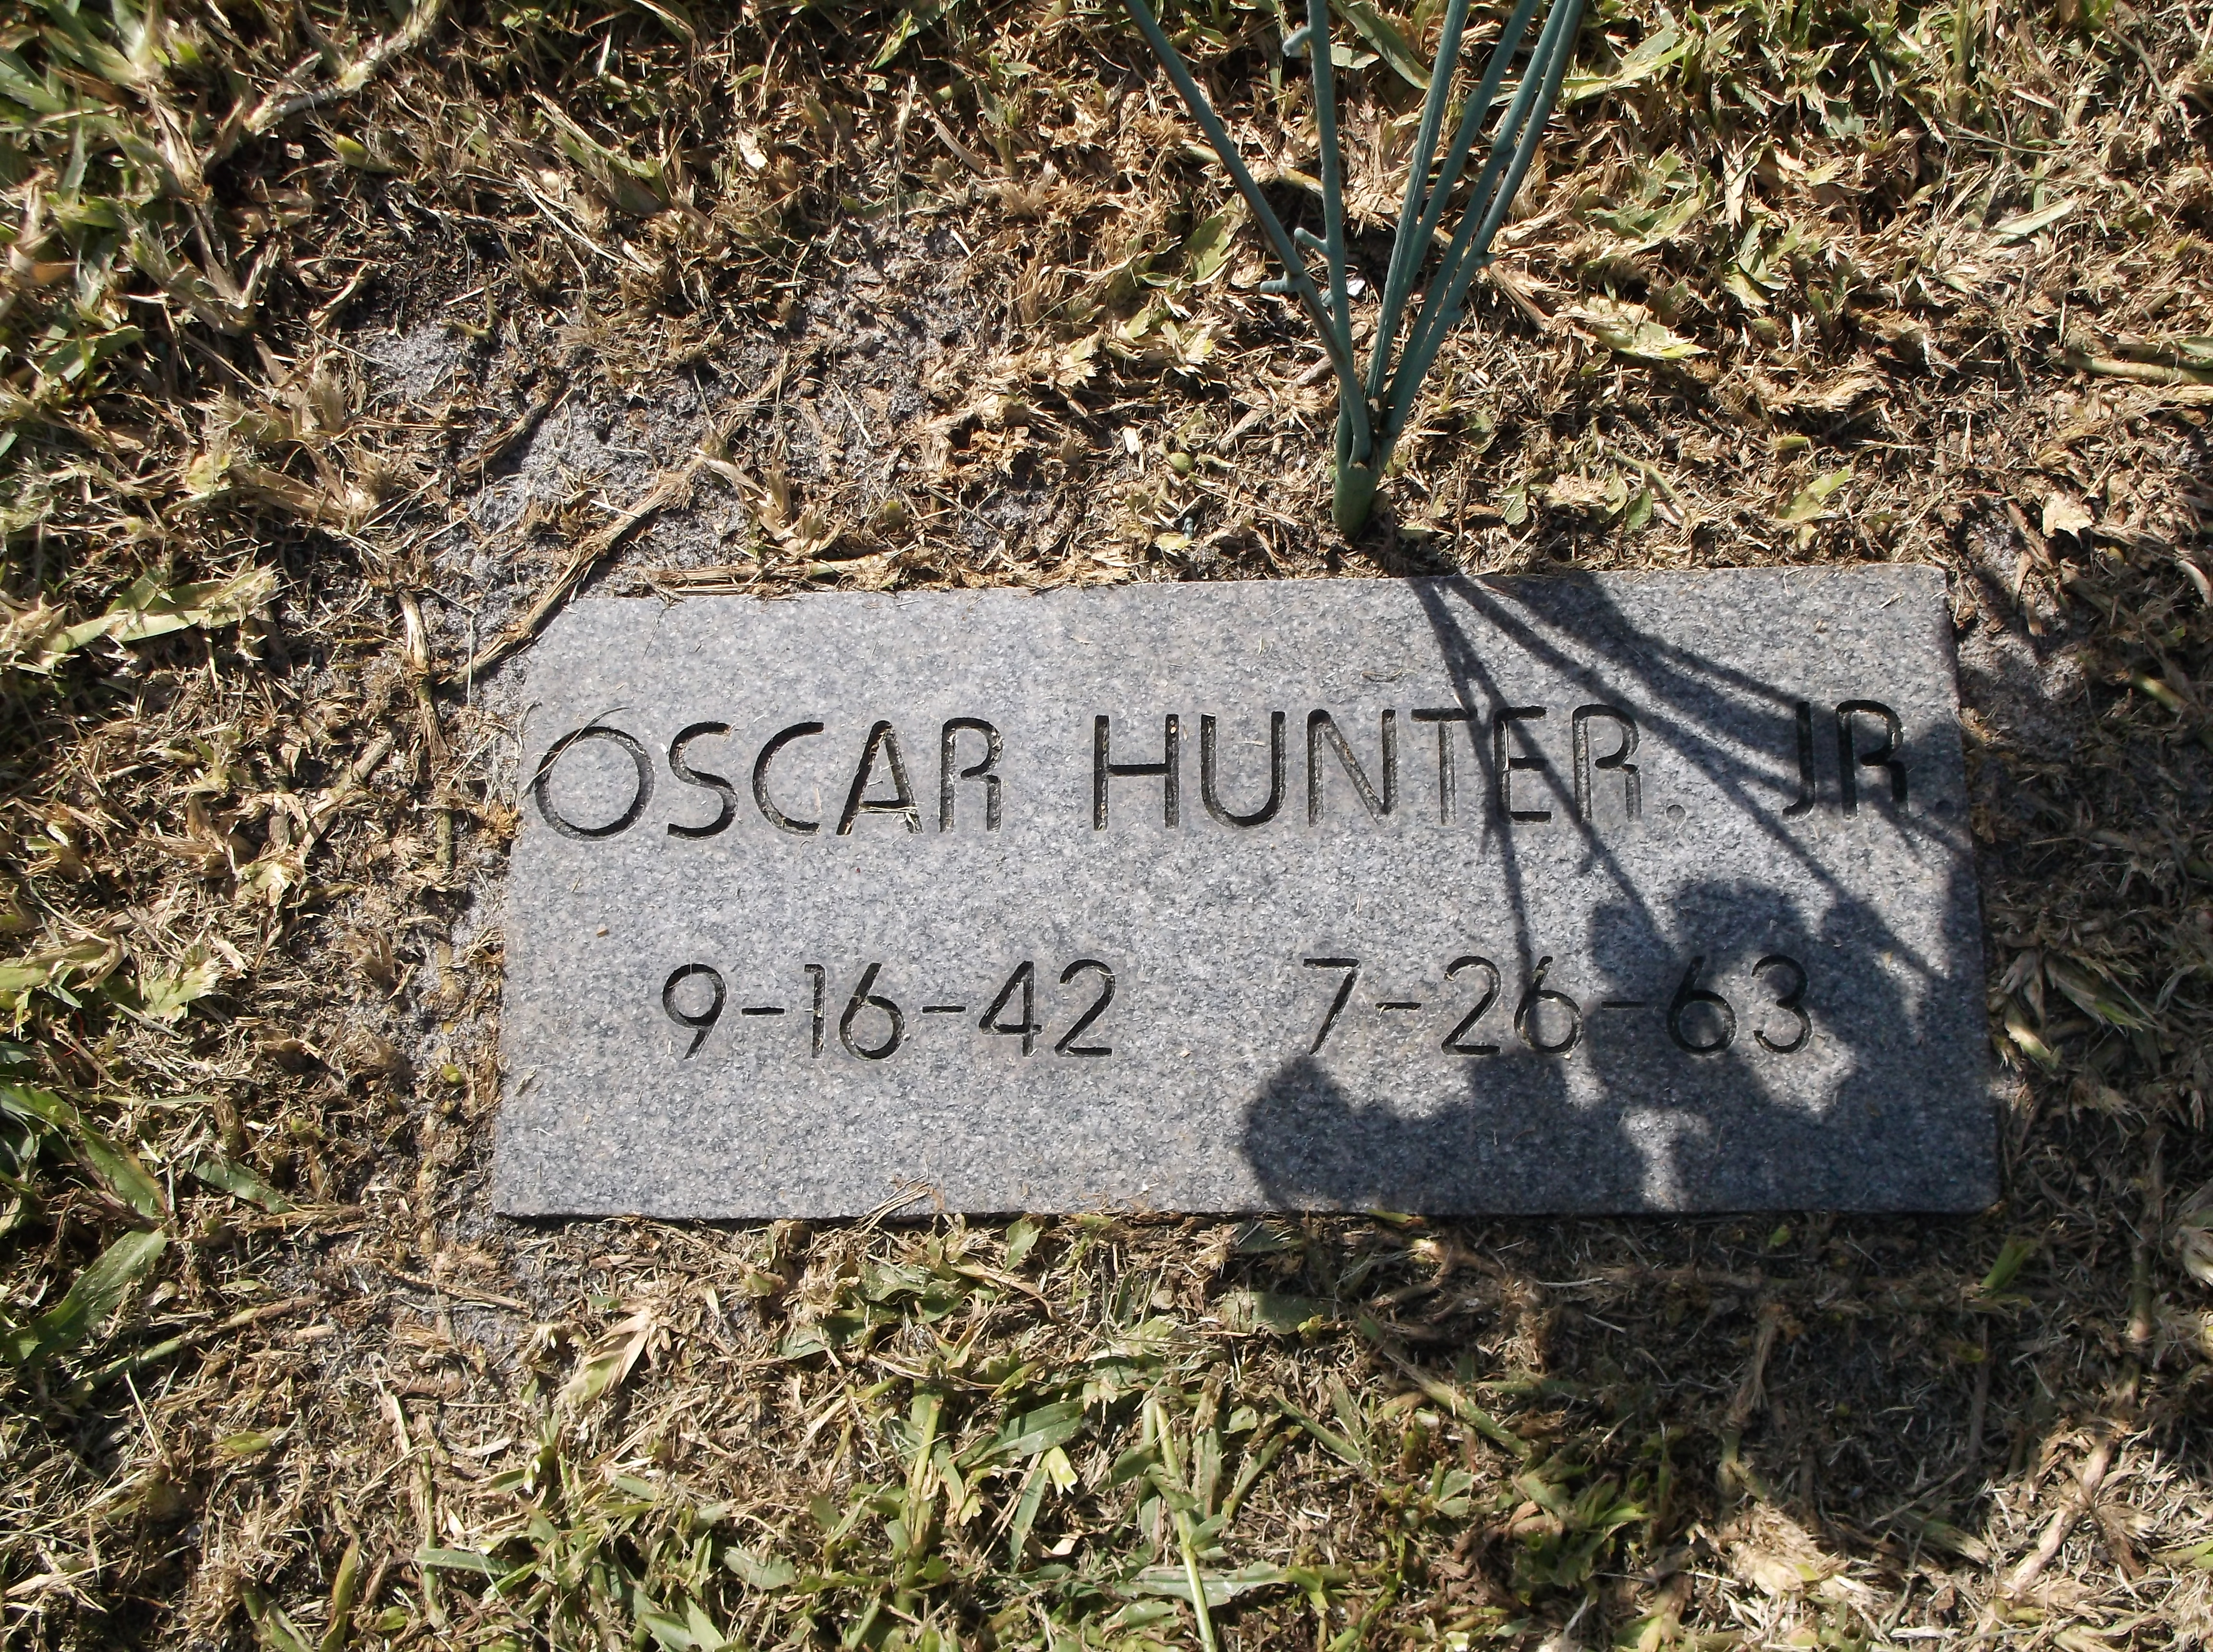 Oscar Hunter, Jr